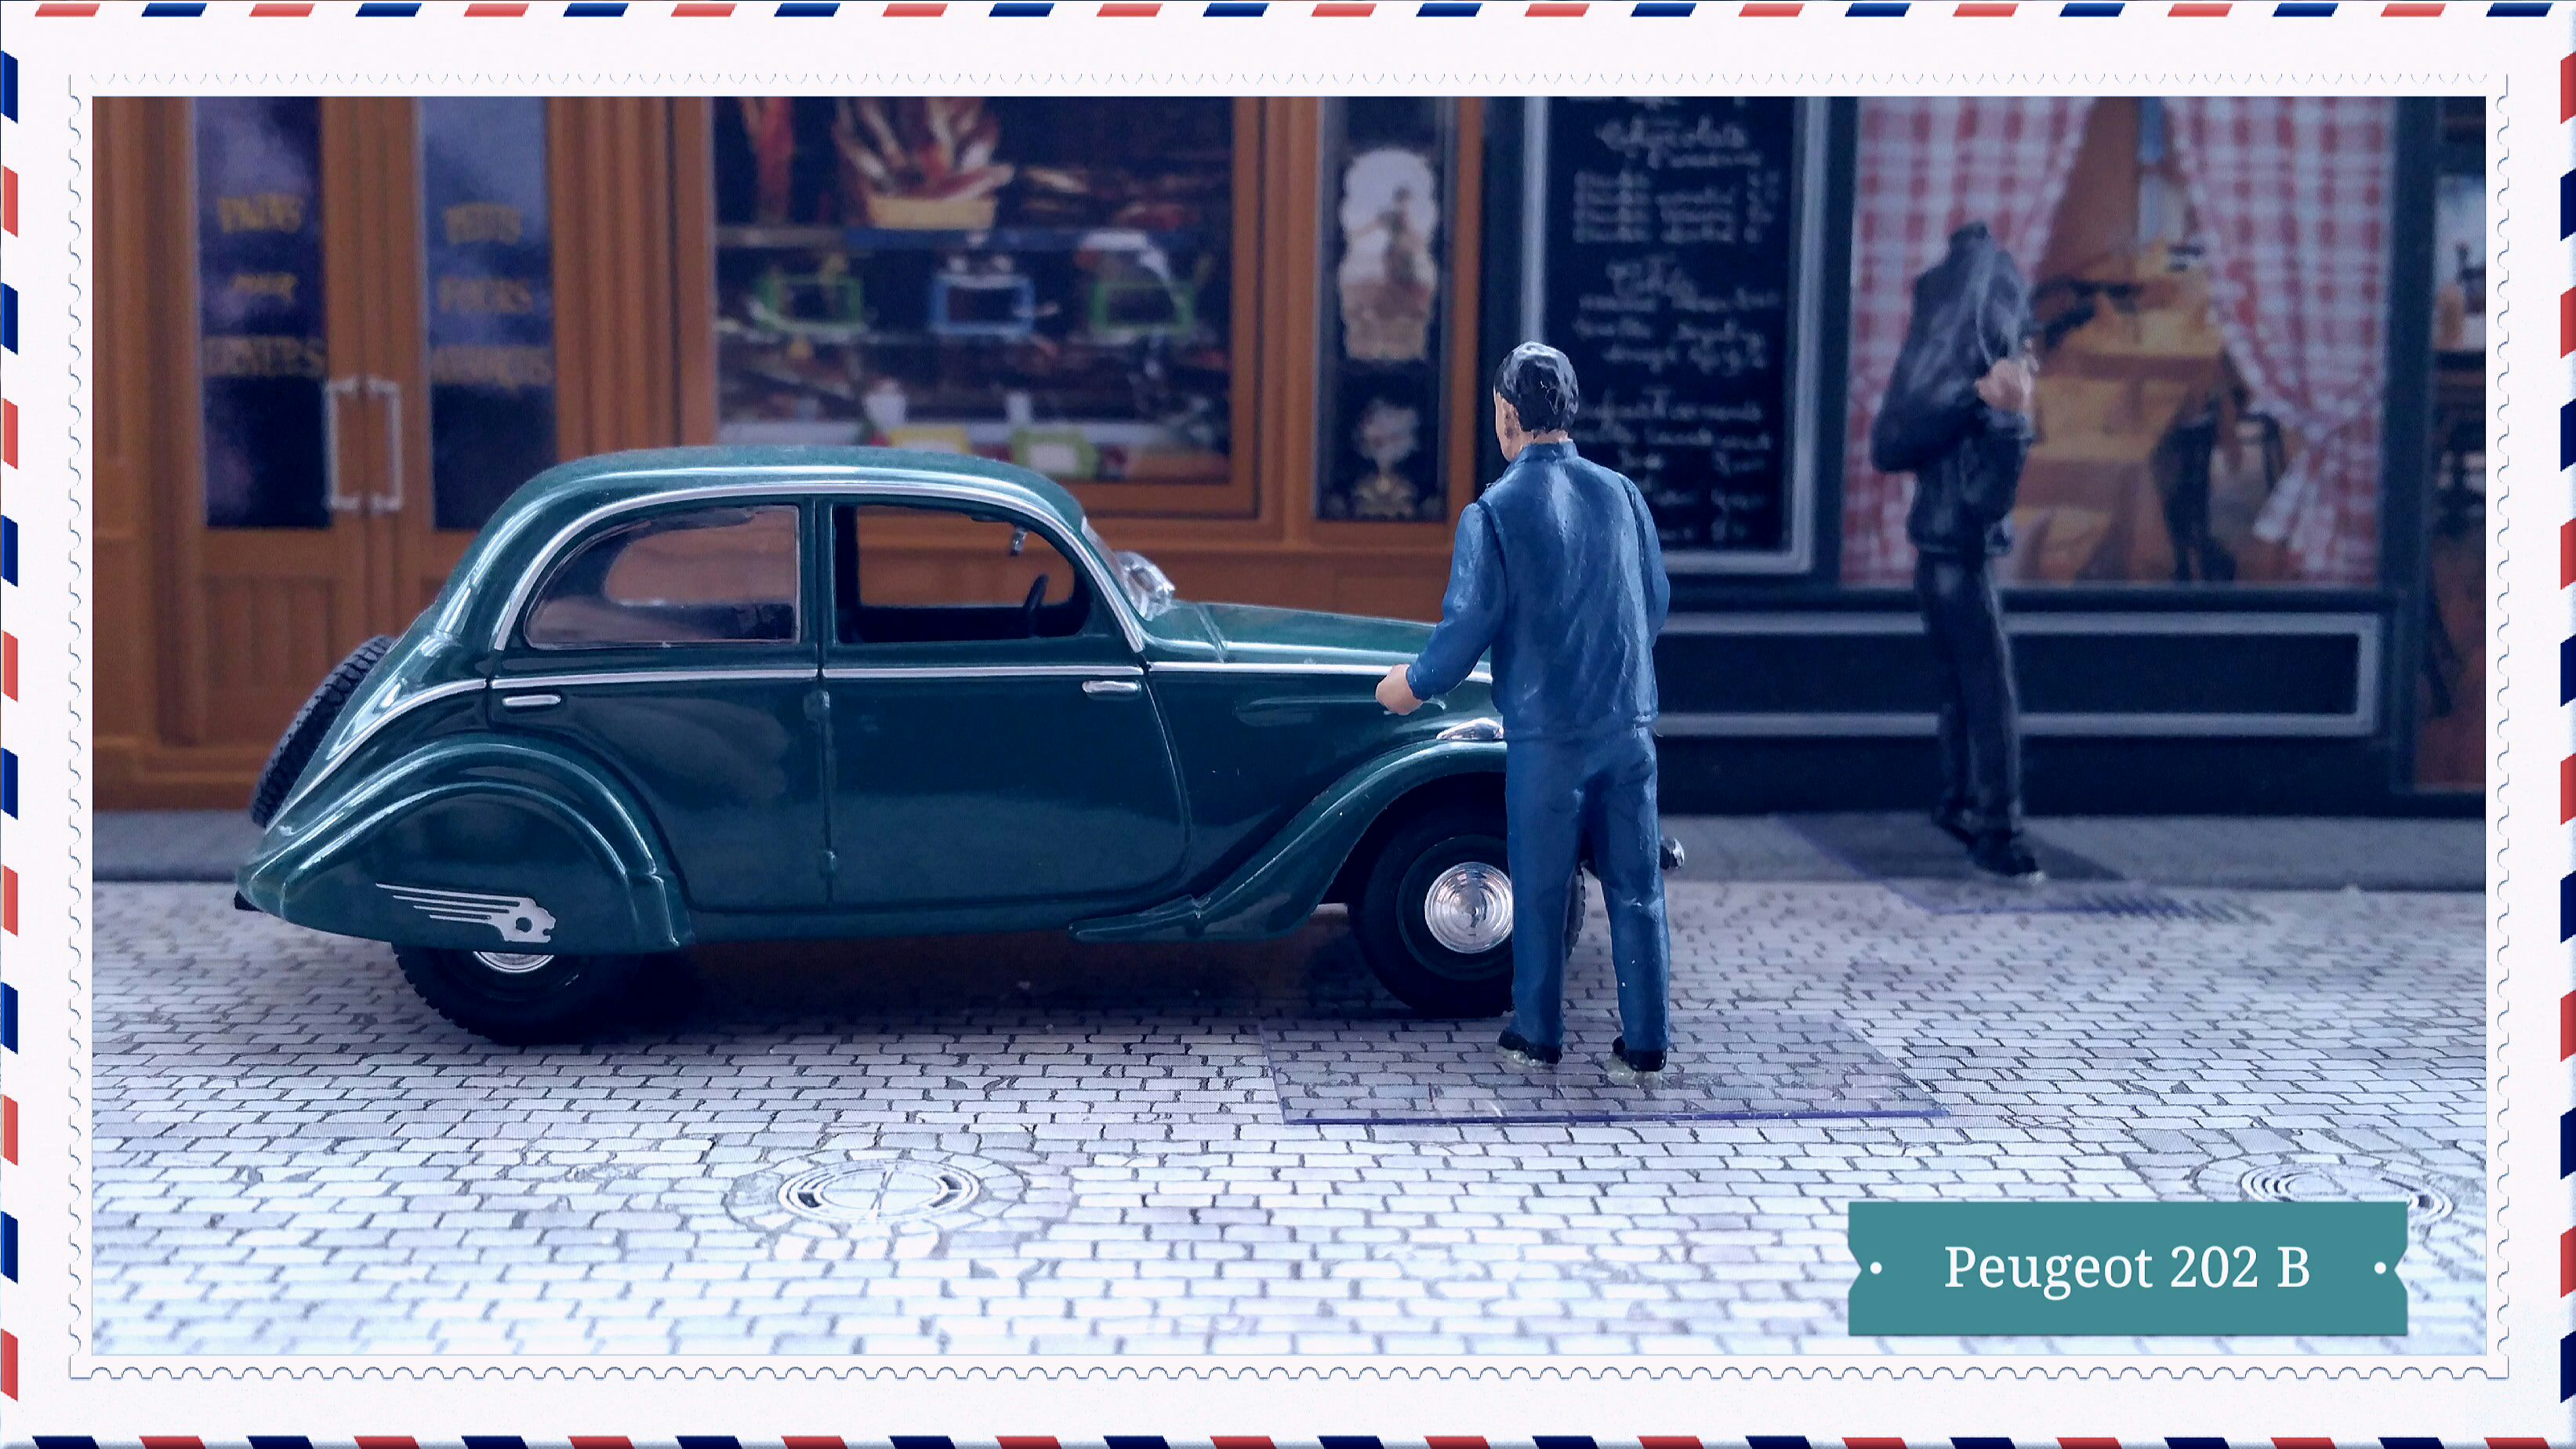 Peugeot 202 (2) - Voitures françaises d’autrefois toy car collectible - Main Image 1